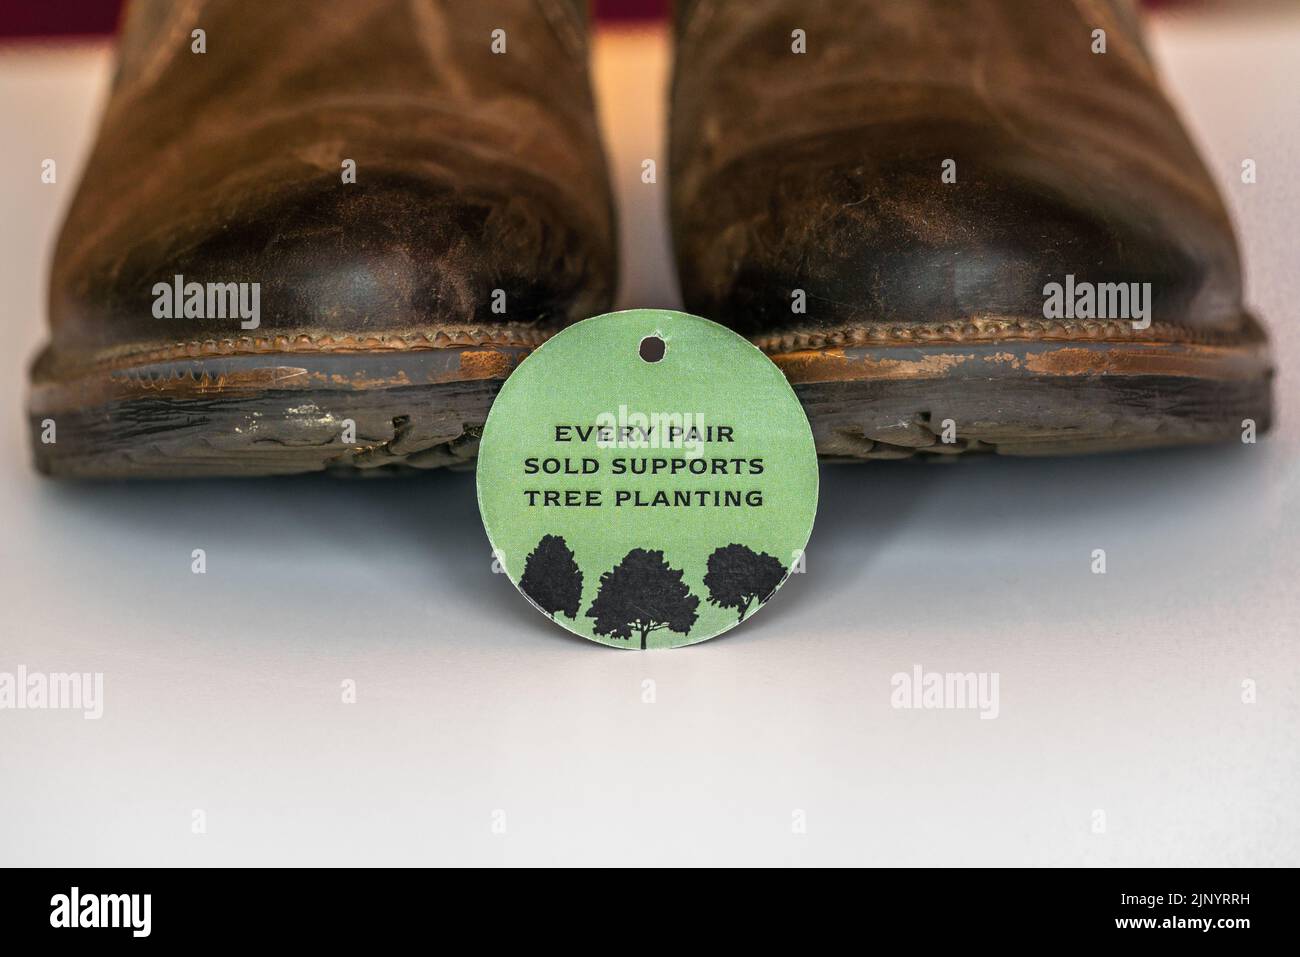 Jedes verkaufte Paar unterstützt die Pflanzung von Bäumen - grünes Öko-Label auf einem Paar Lederstiefel, nachhaltige Mode, Großbritannien Stockfoto